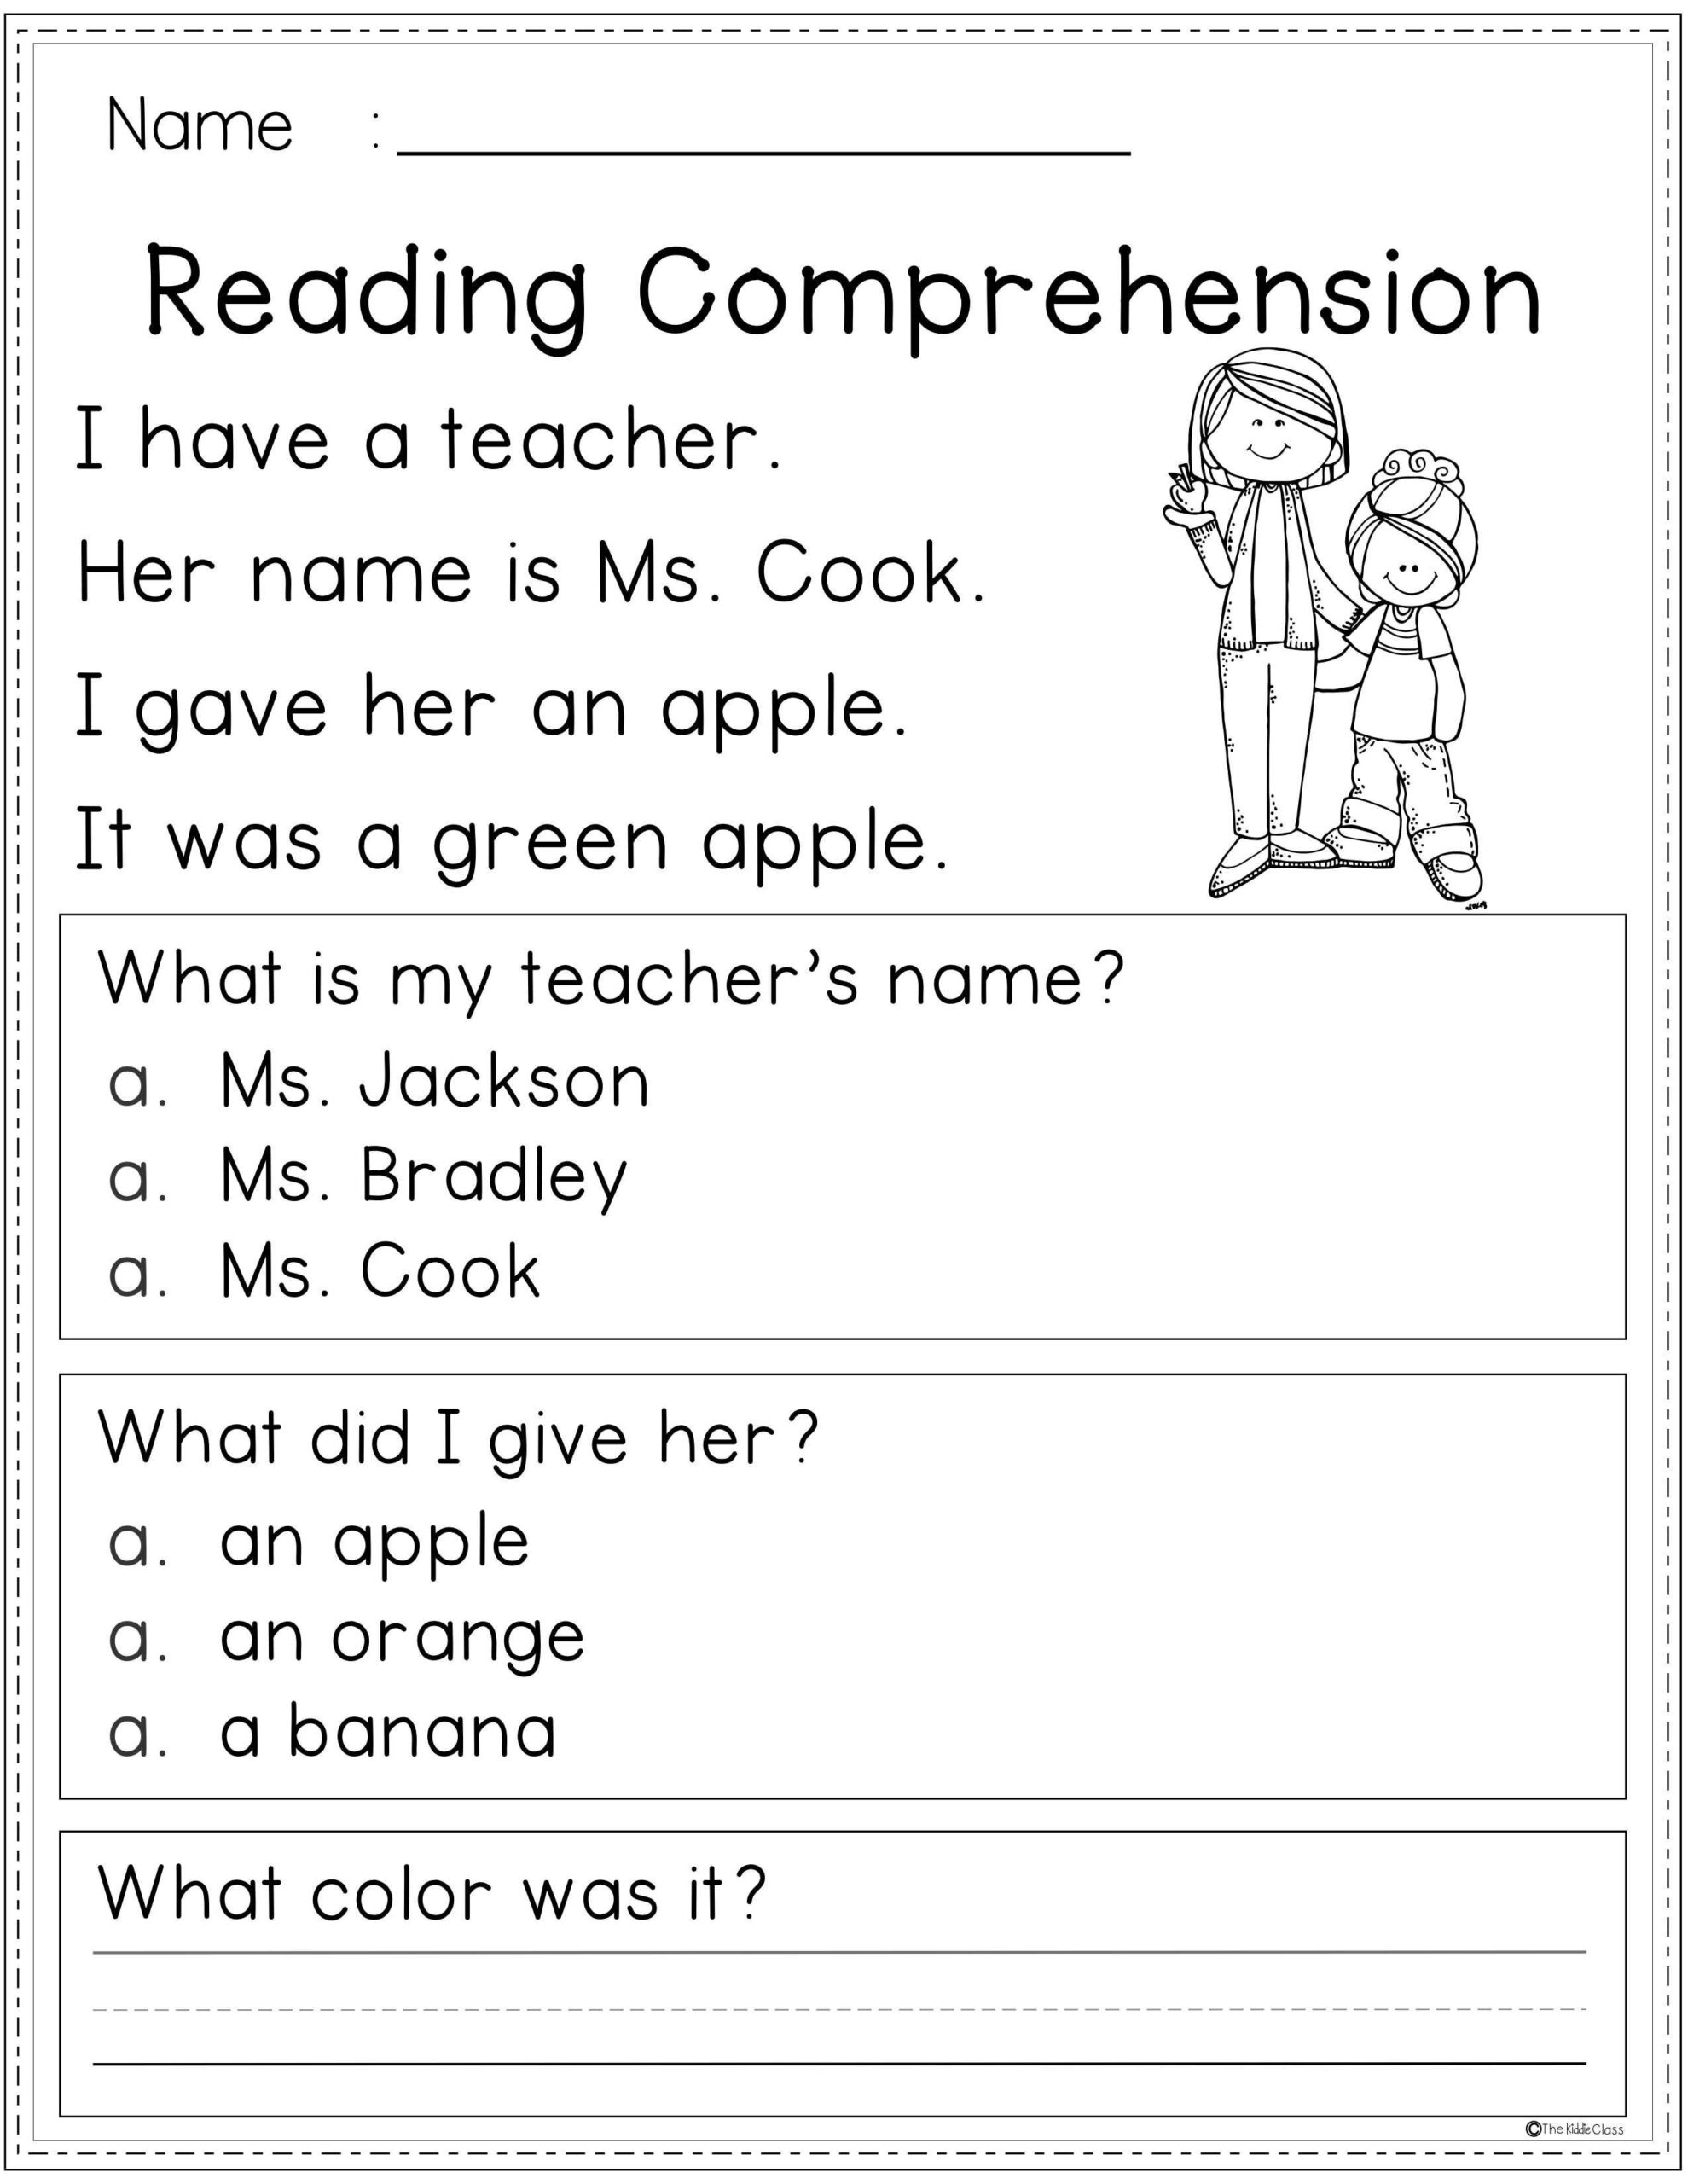 Free Reading Comprehension Worksheets For Kindergarten Pdf